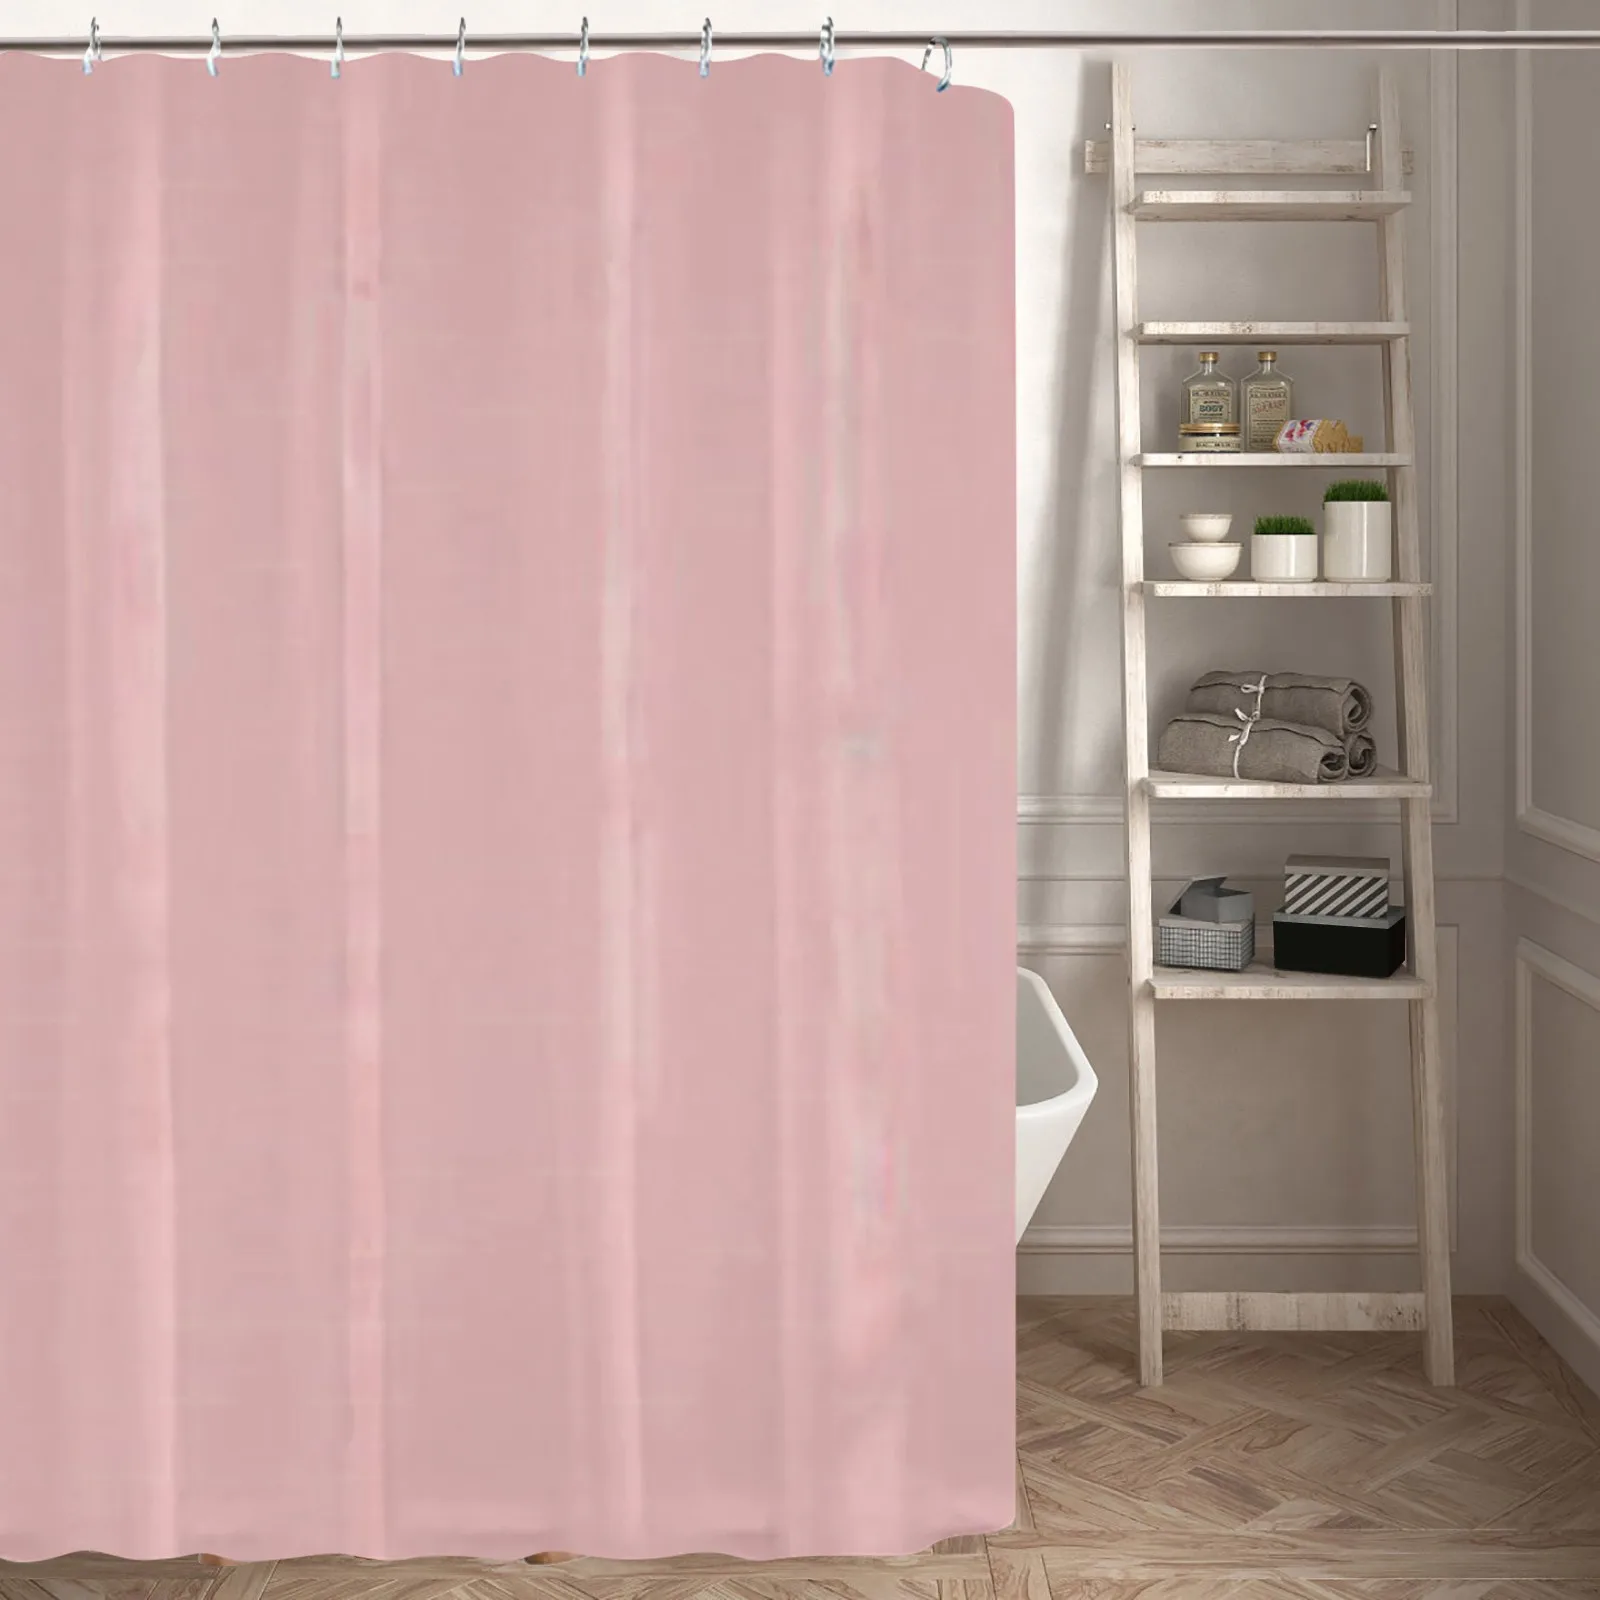 Комплект однотонных штор для душа в ванной, занавеска для перегородки в ванной Без сверления * розовая стоячая занавеска для душа длинной